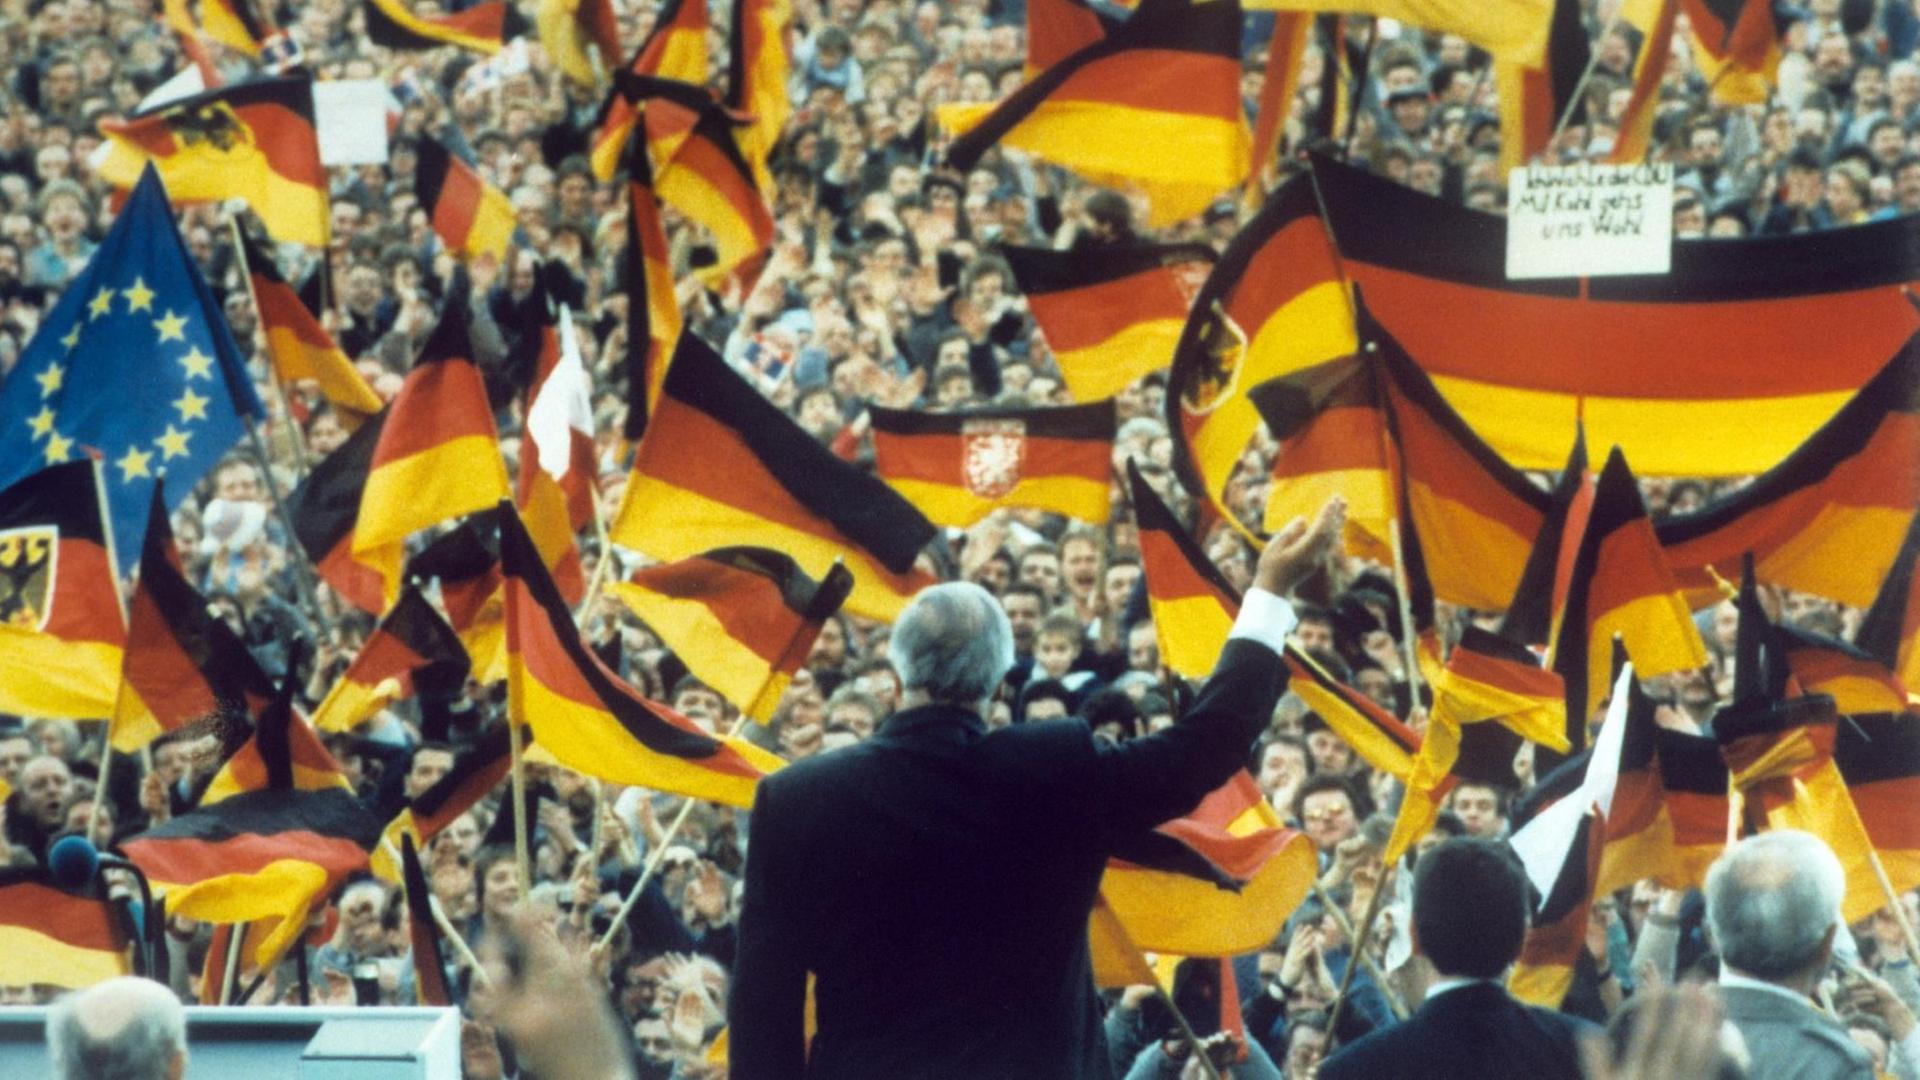 Helmut Kohl grüßt in die Menge. Viele Menschen schwenken Deutschland-Fahnen, auch eine Europa-Fahne ist dabei.